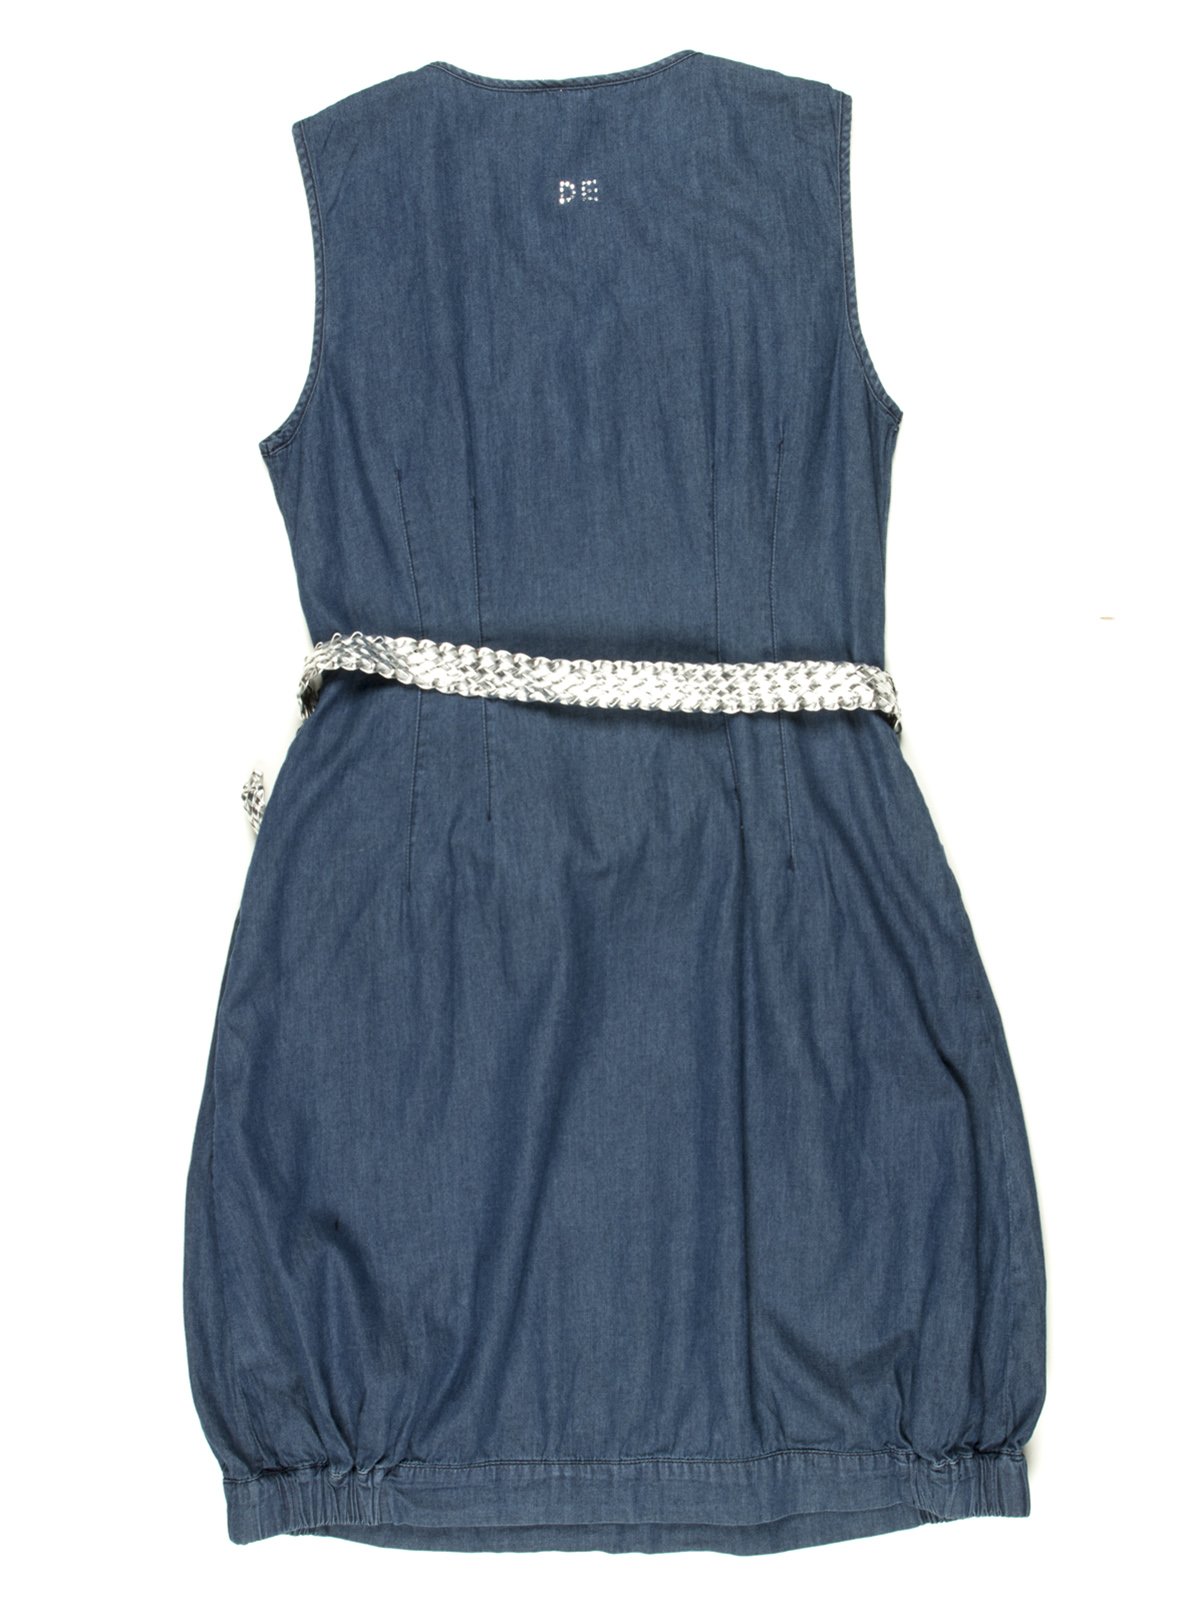 Платье синее джинсовое с плетеным поясом | 597276